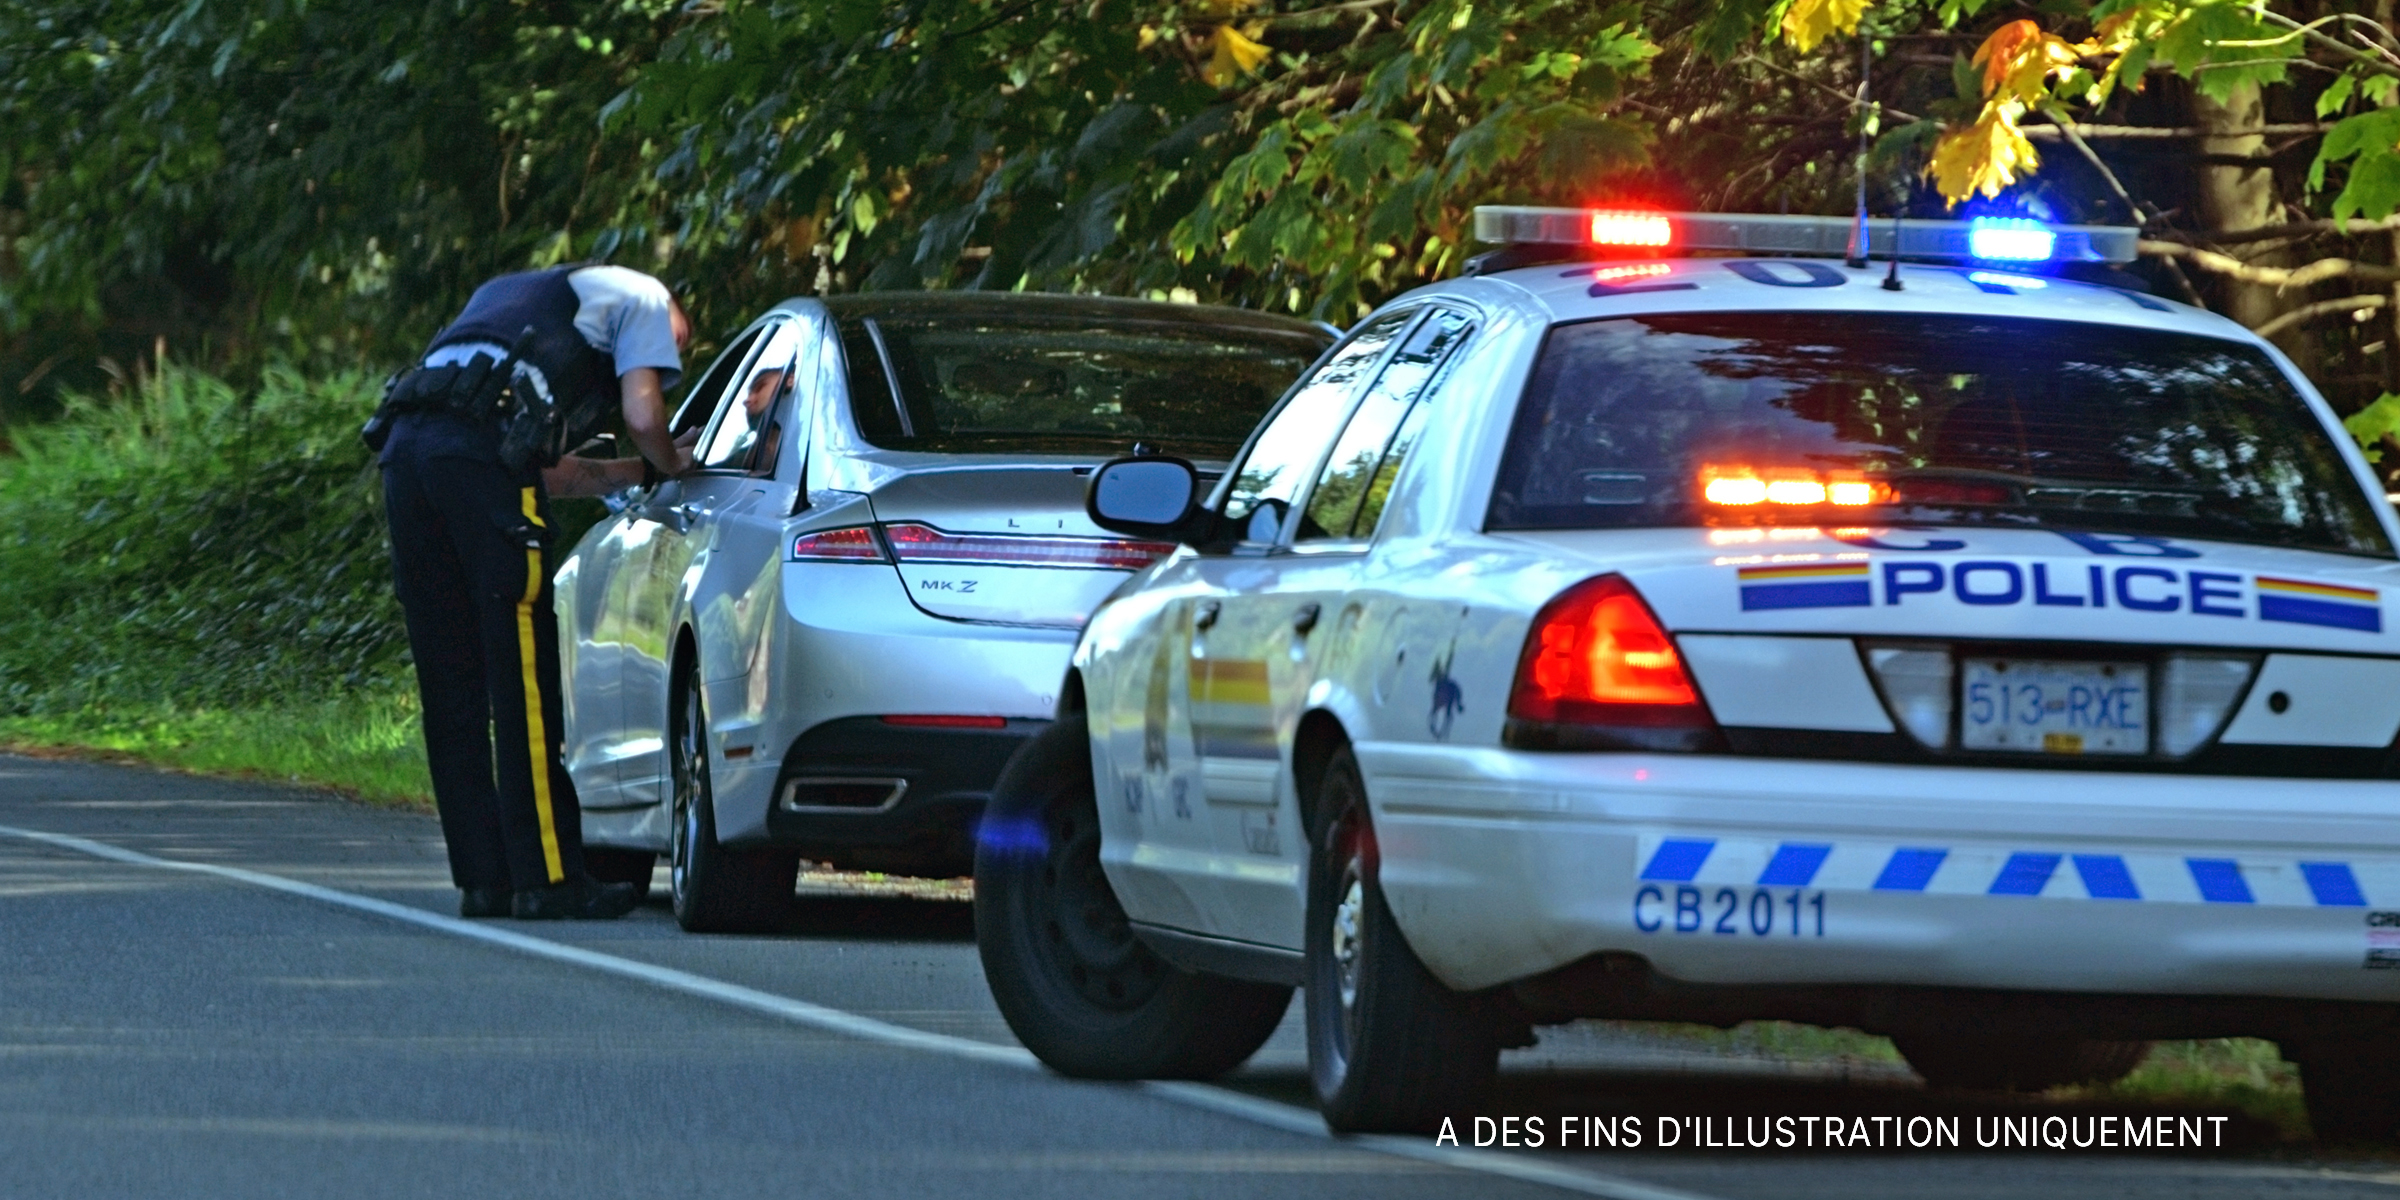 Un officier de police parle à un automobiliste par la fenêtre ouverte | Source : Shutterstock